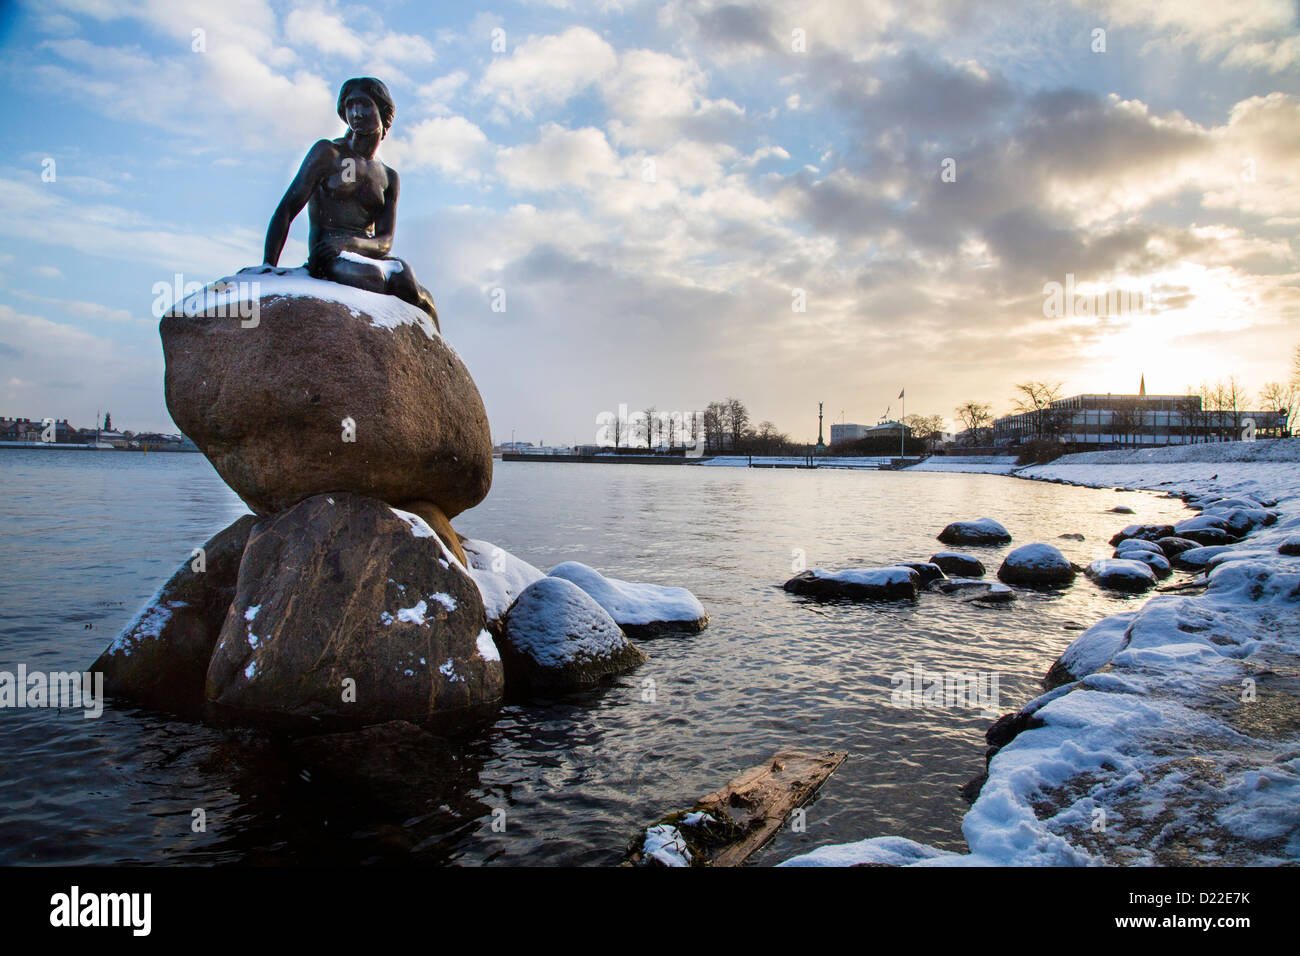 L'hiver à Copenhague. La sculpture de la petite sirène dans la zone portuaire, couverte de neige. Copenhague, Danemark, Europe Banque D'Images